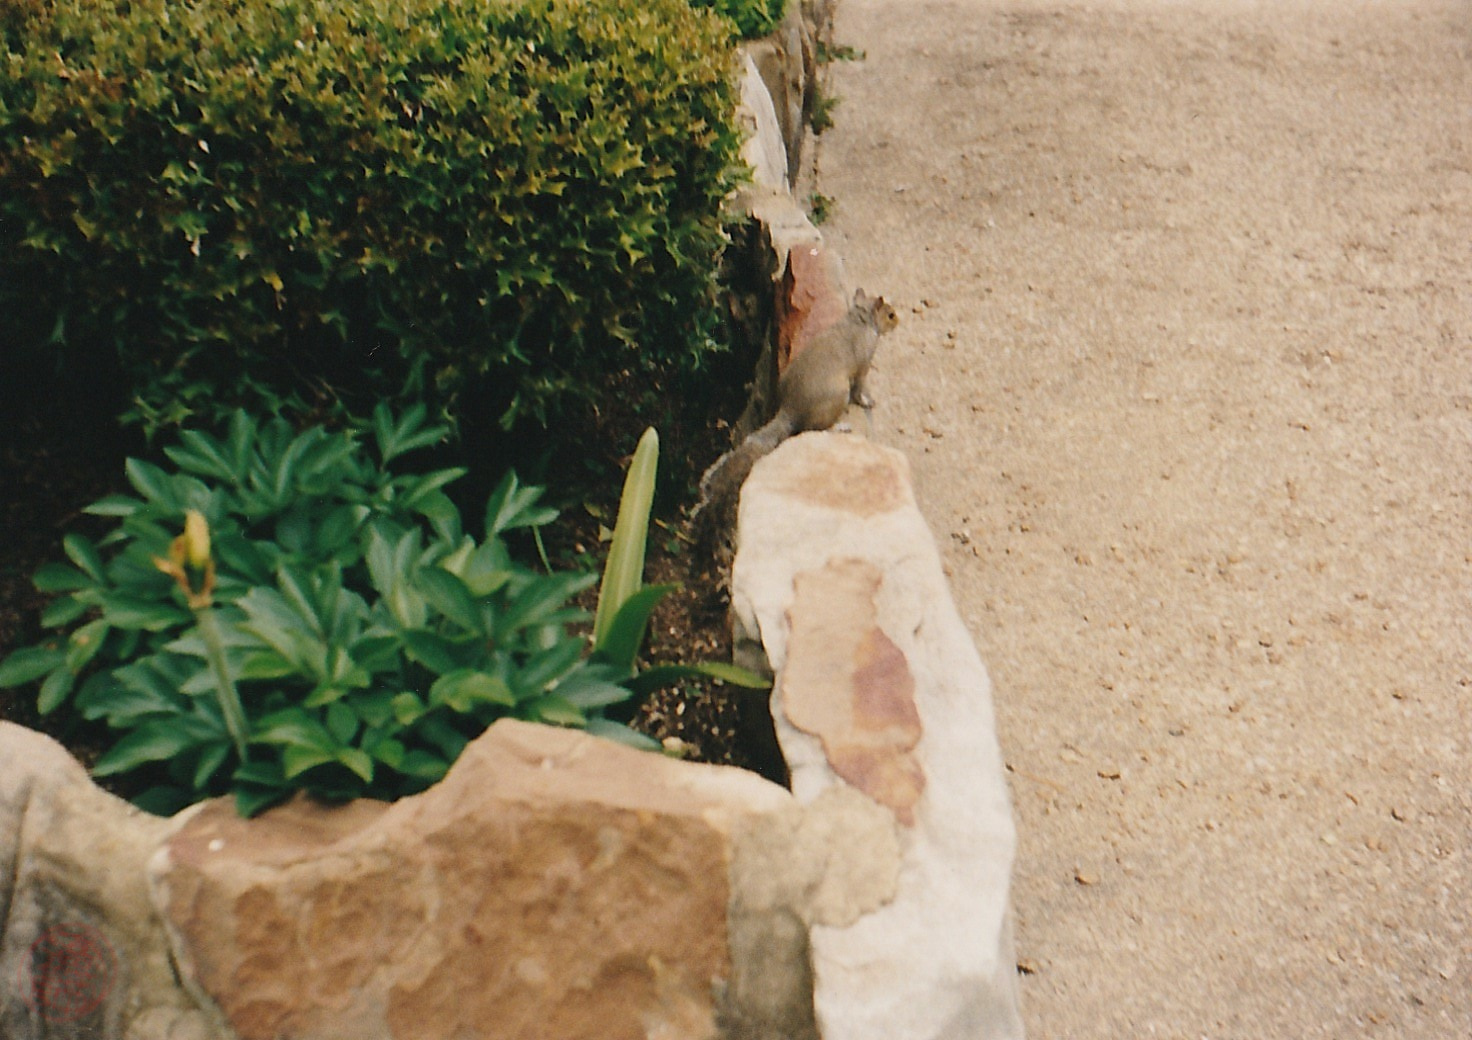 Noccalula Falls Park, 1999